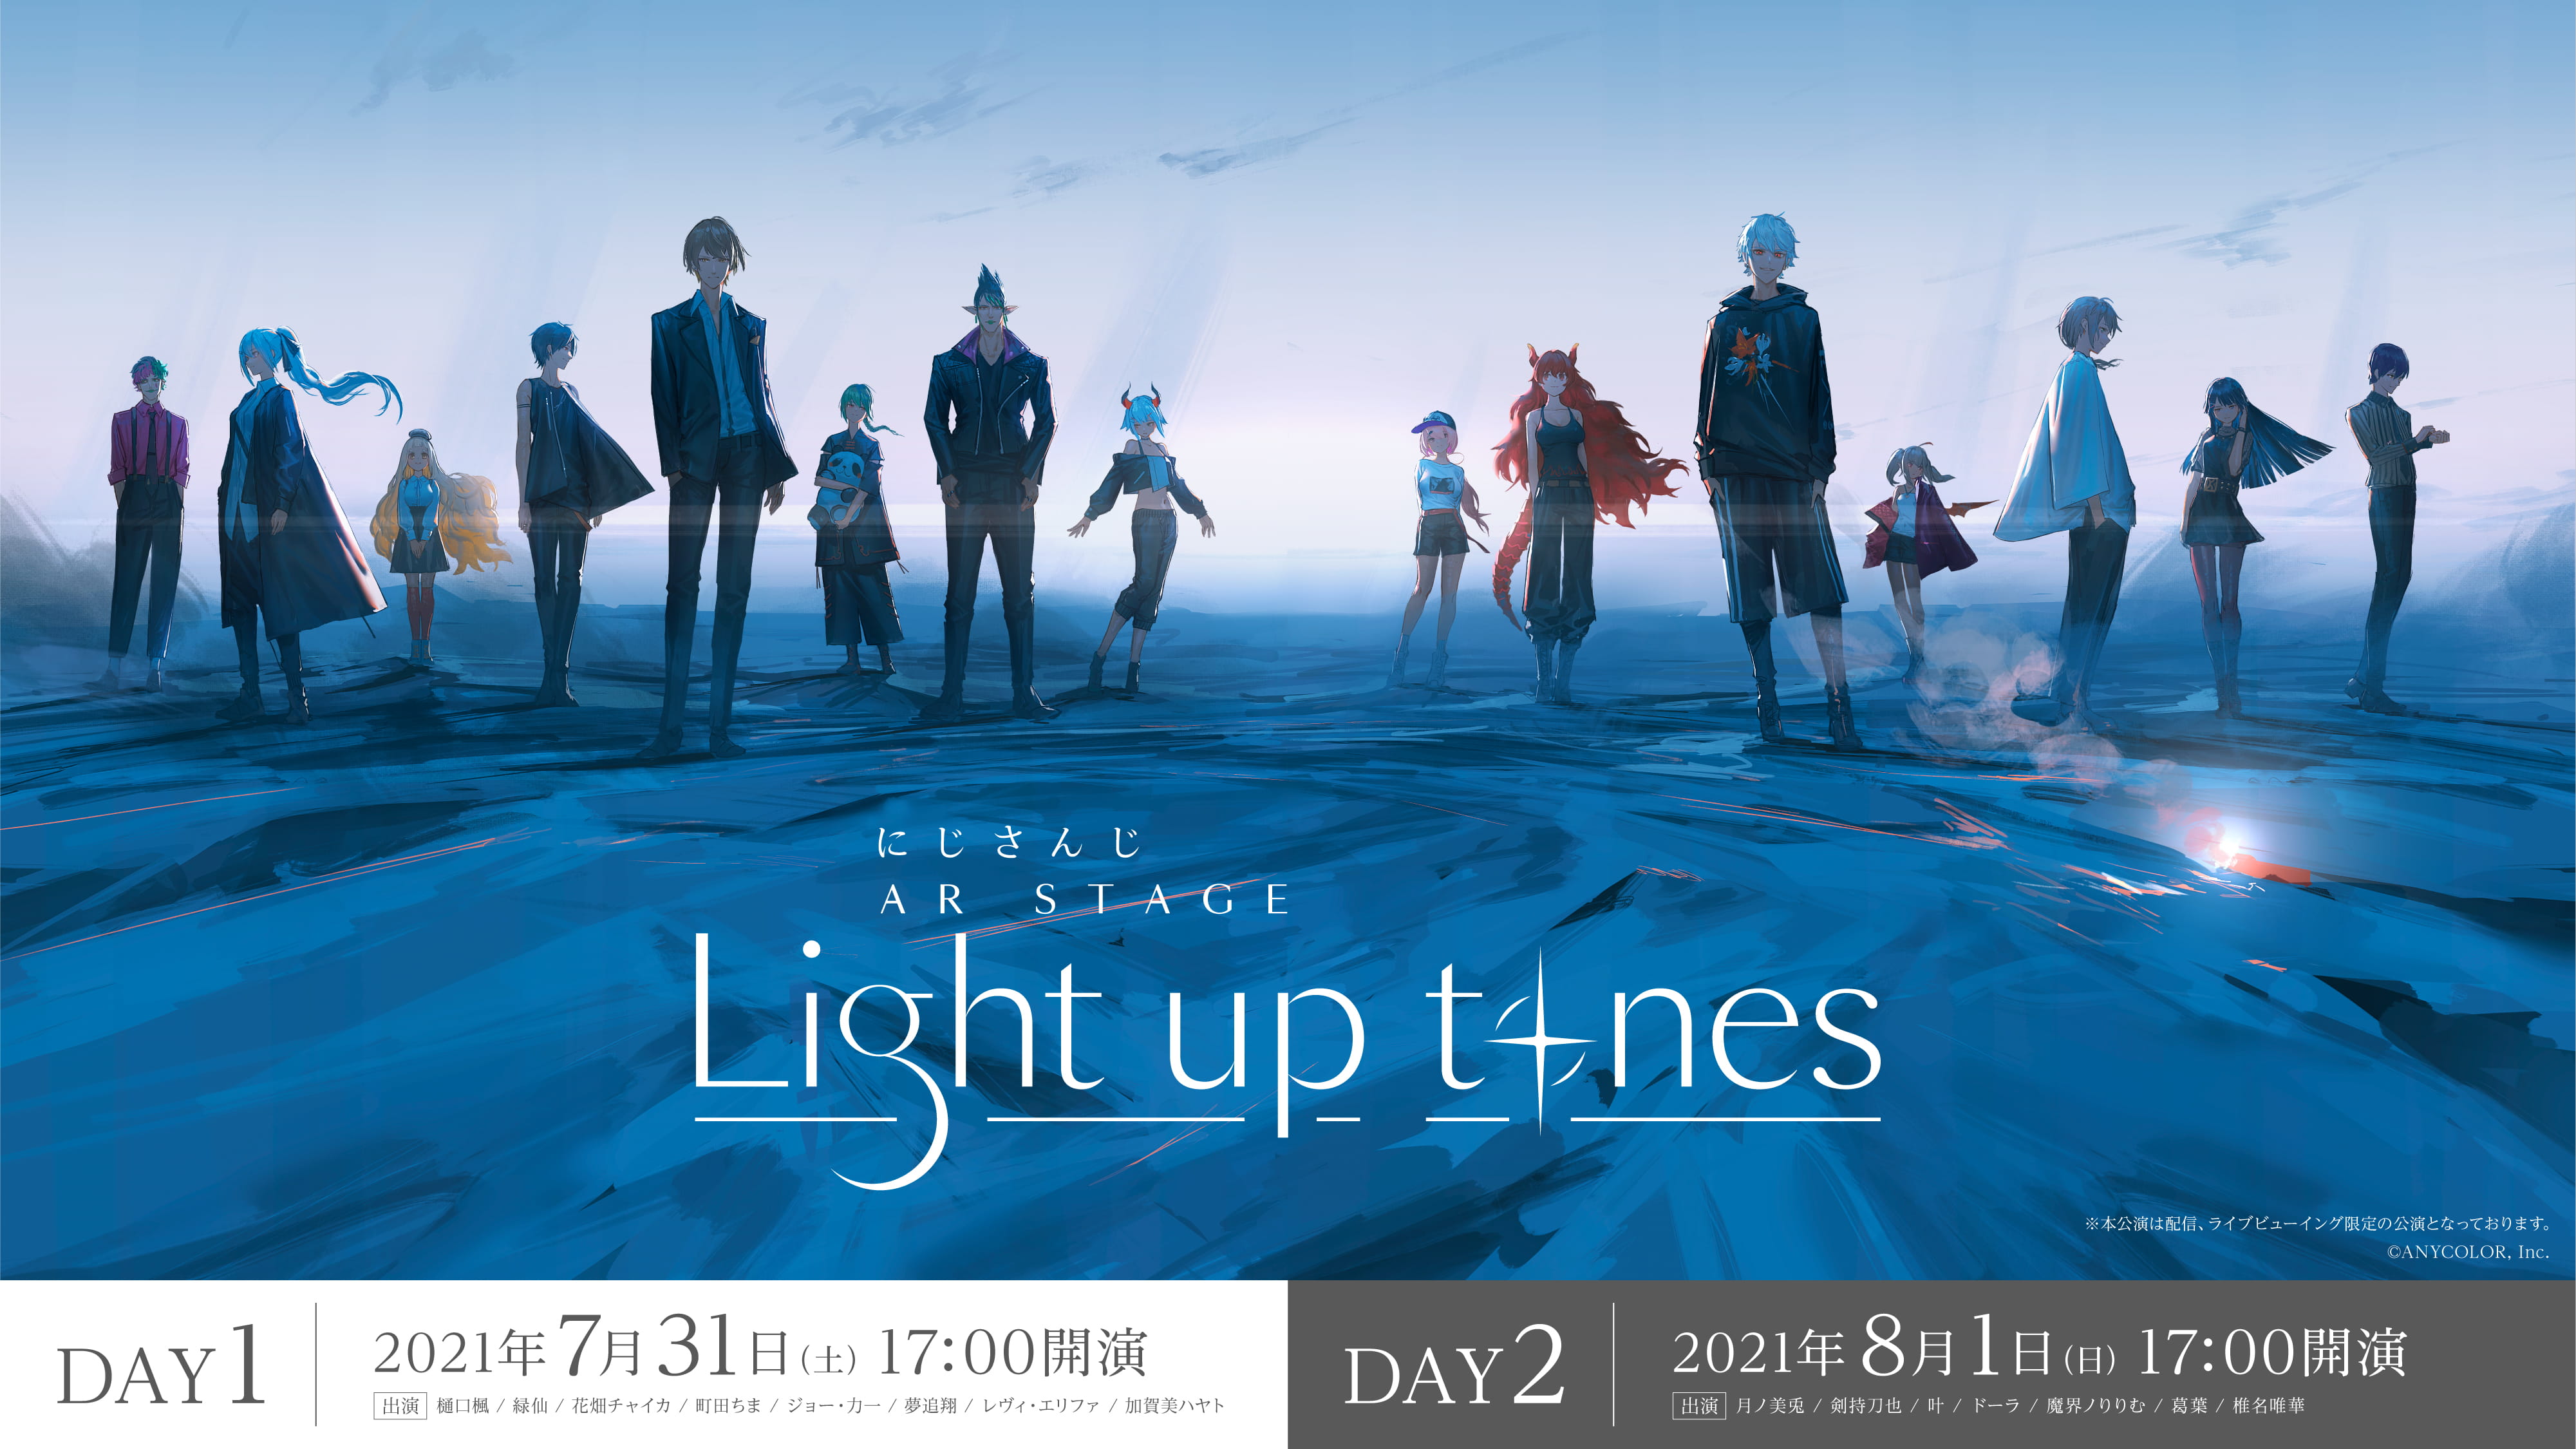 にじさんじ AR STAGE Light up tones - DAY1 2021/7/31 (土)・DAY2 2021/8/1 (日), 17:00 START